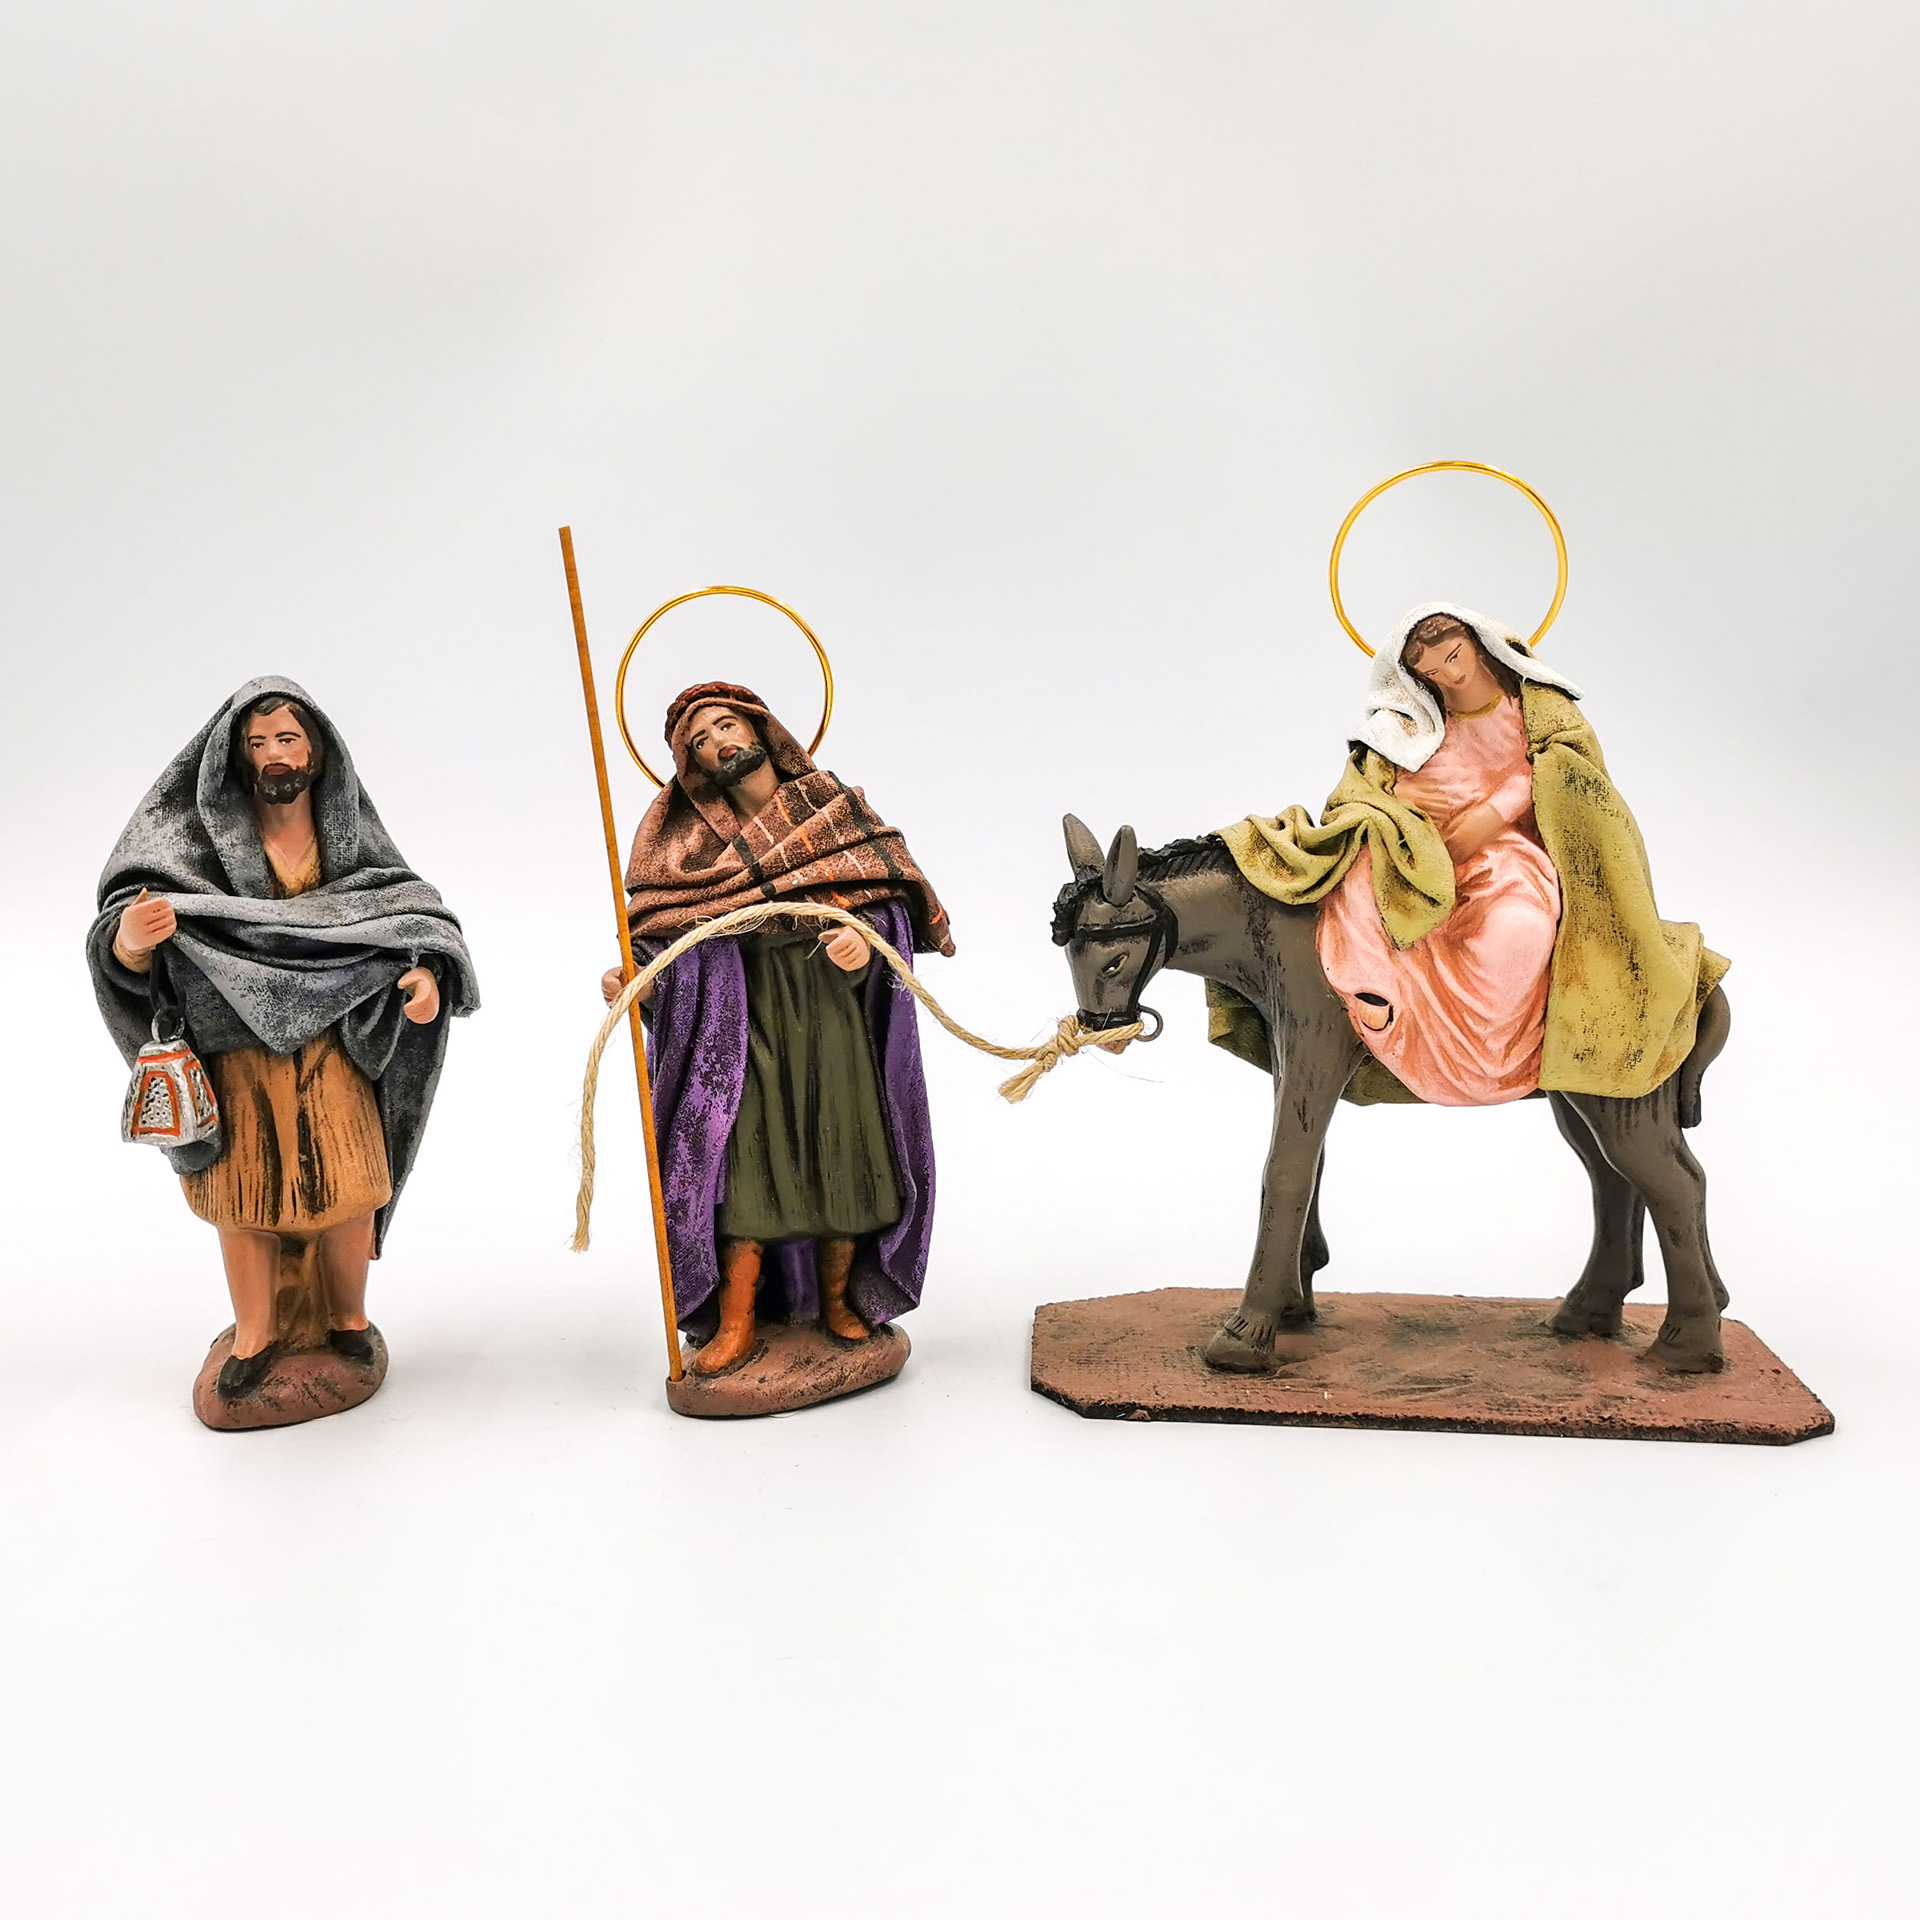 Herbergssuche mit Maria auf Esel, Josef und Hirte